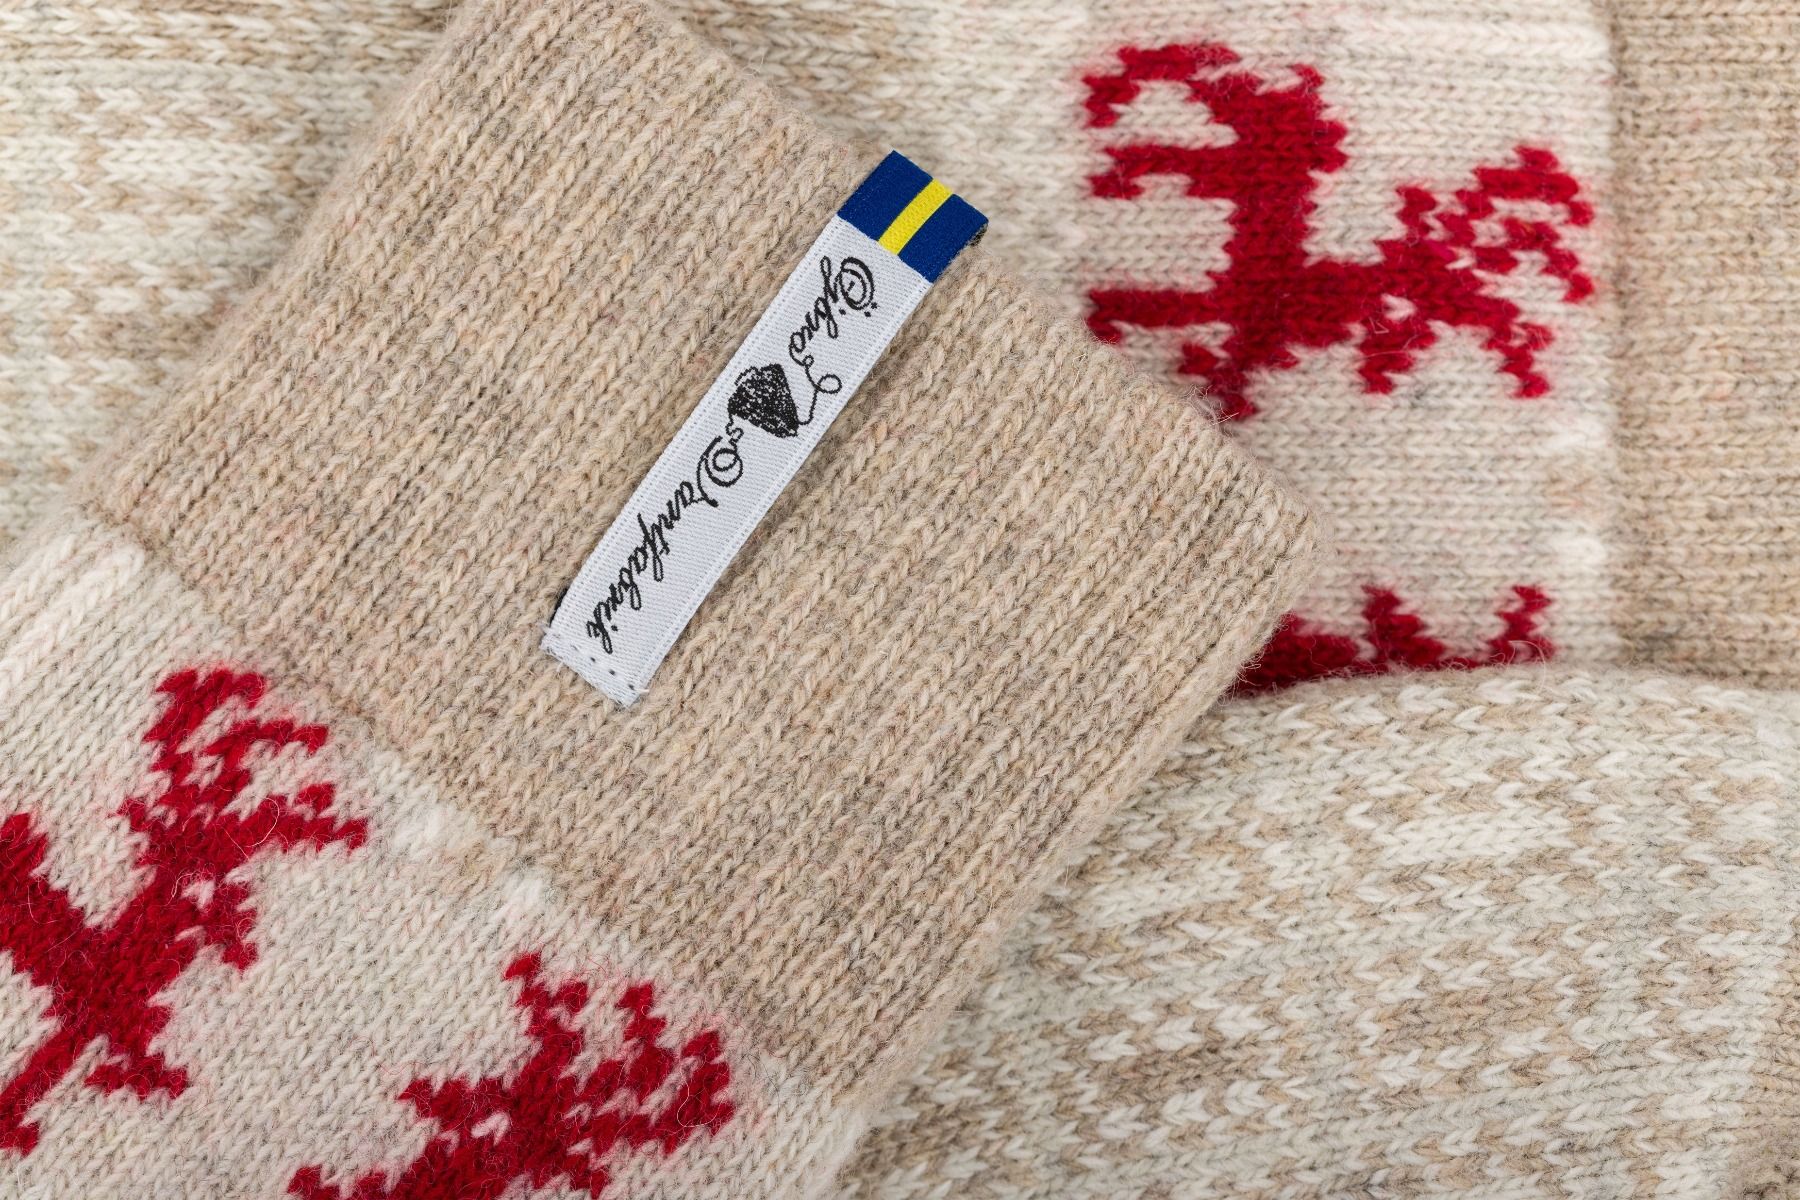 Oejbro Scania Michael Woollen socks. Lotta from Stockholm